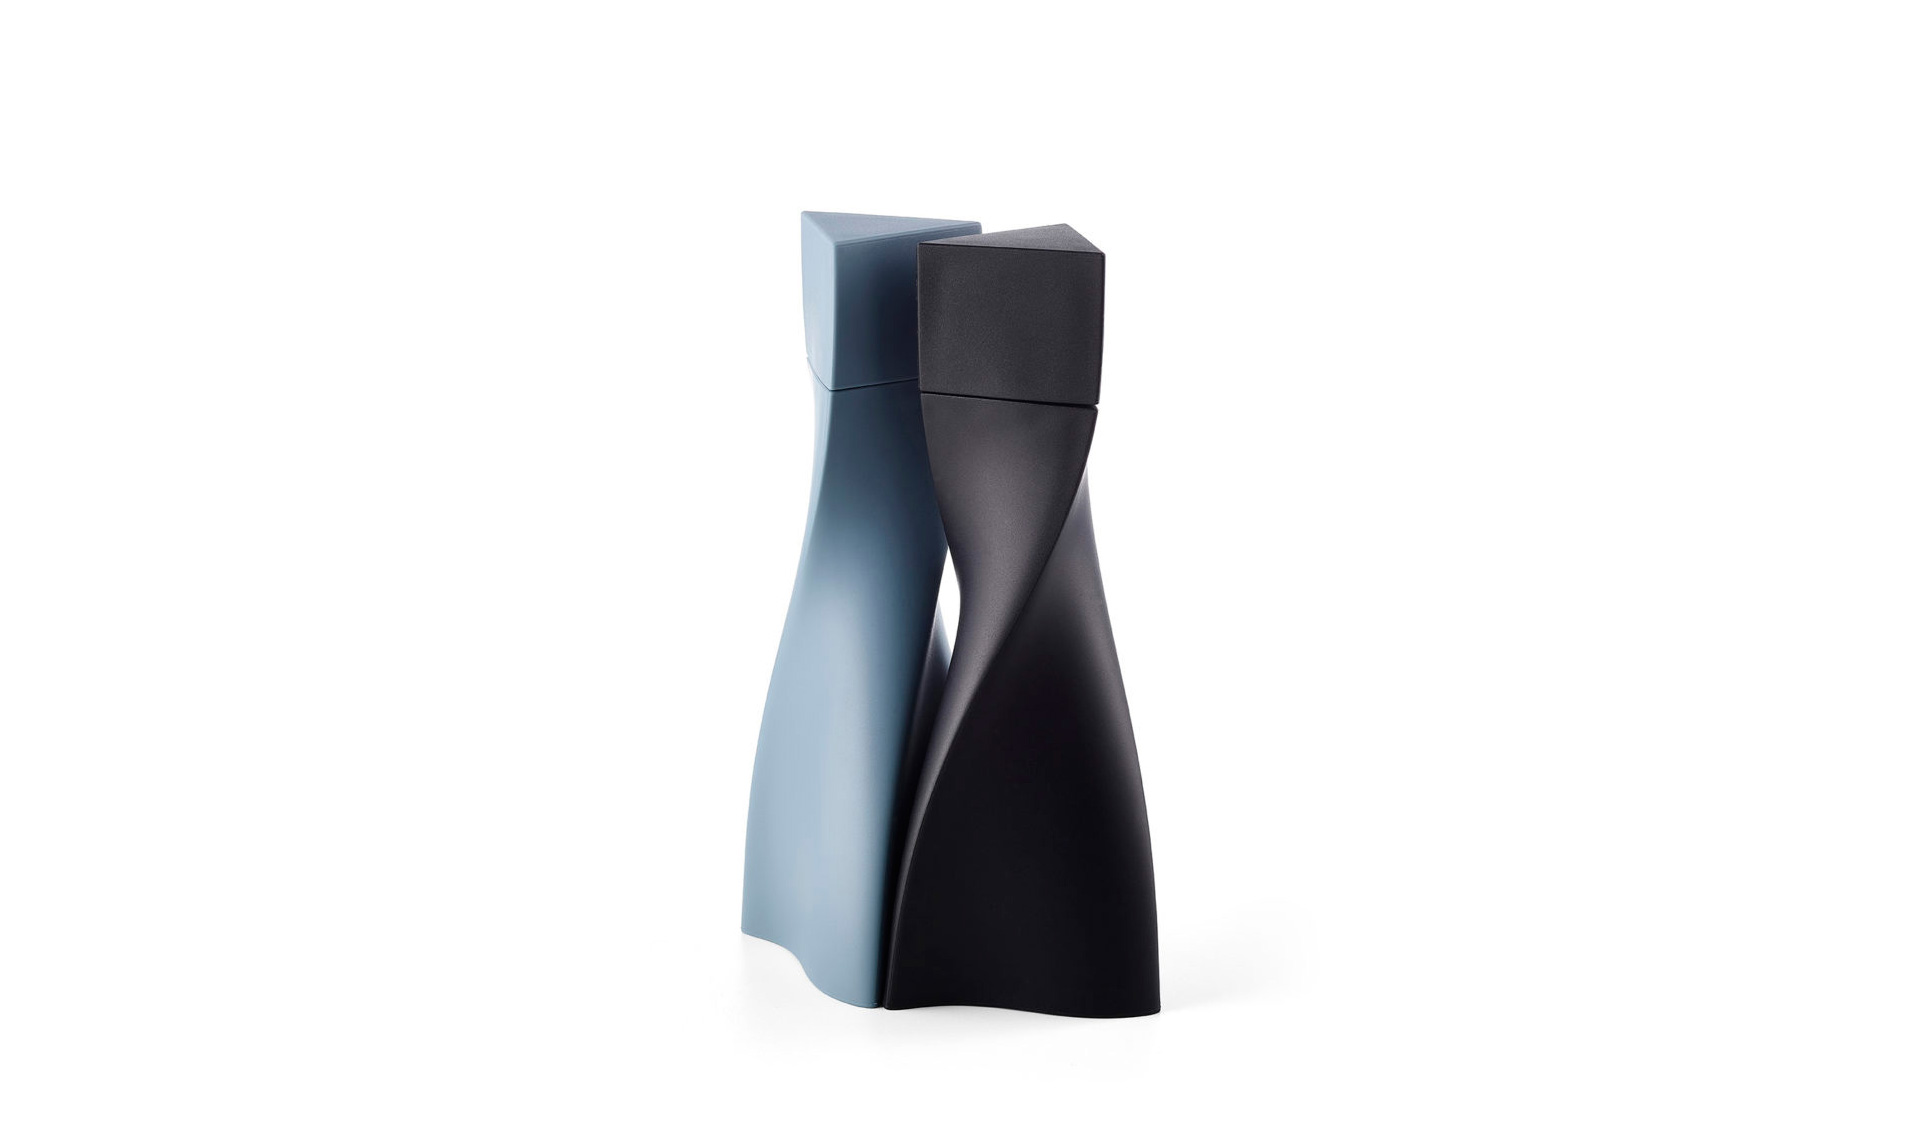 Солонка Zaha Hadid Design получила премию за лучший дизайн